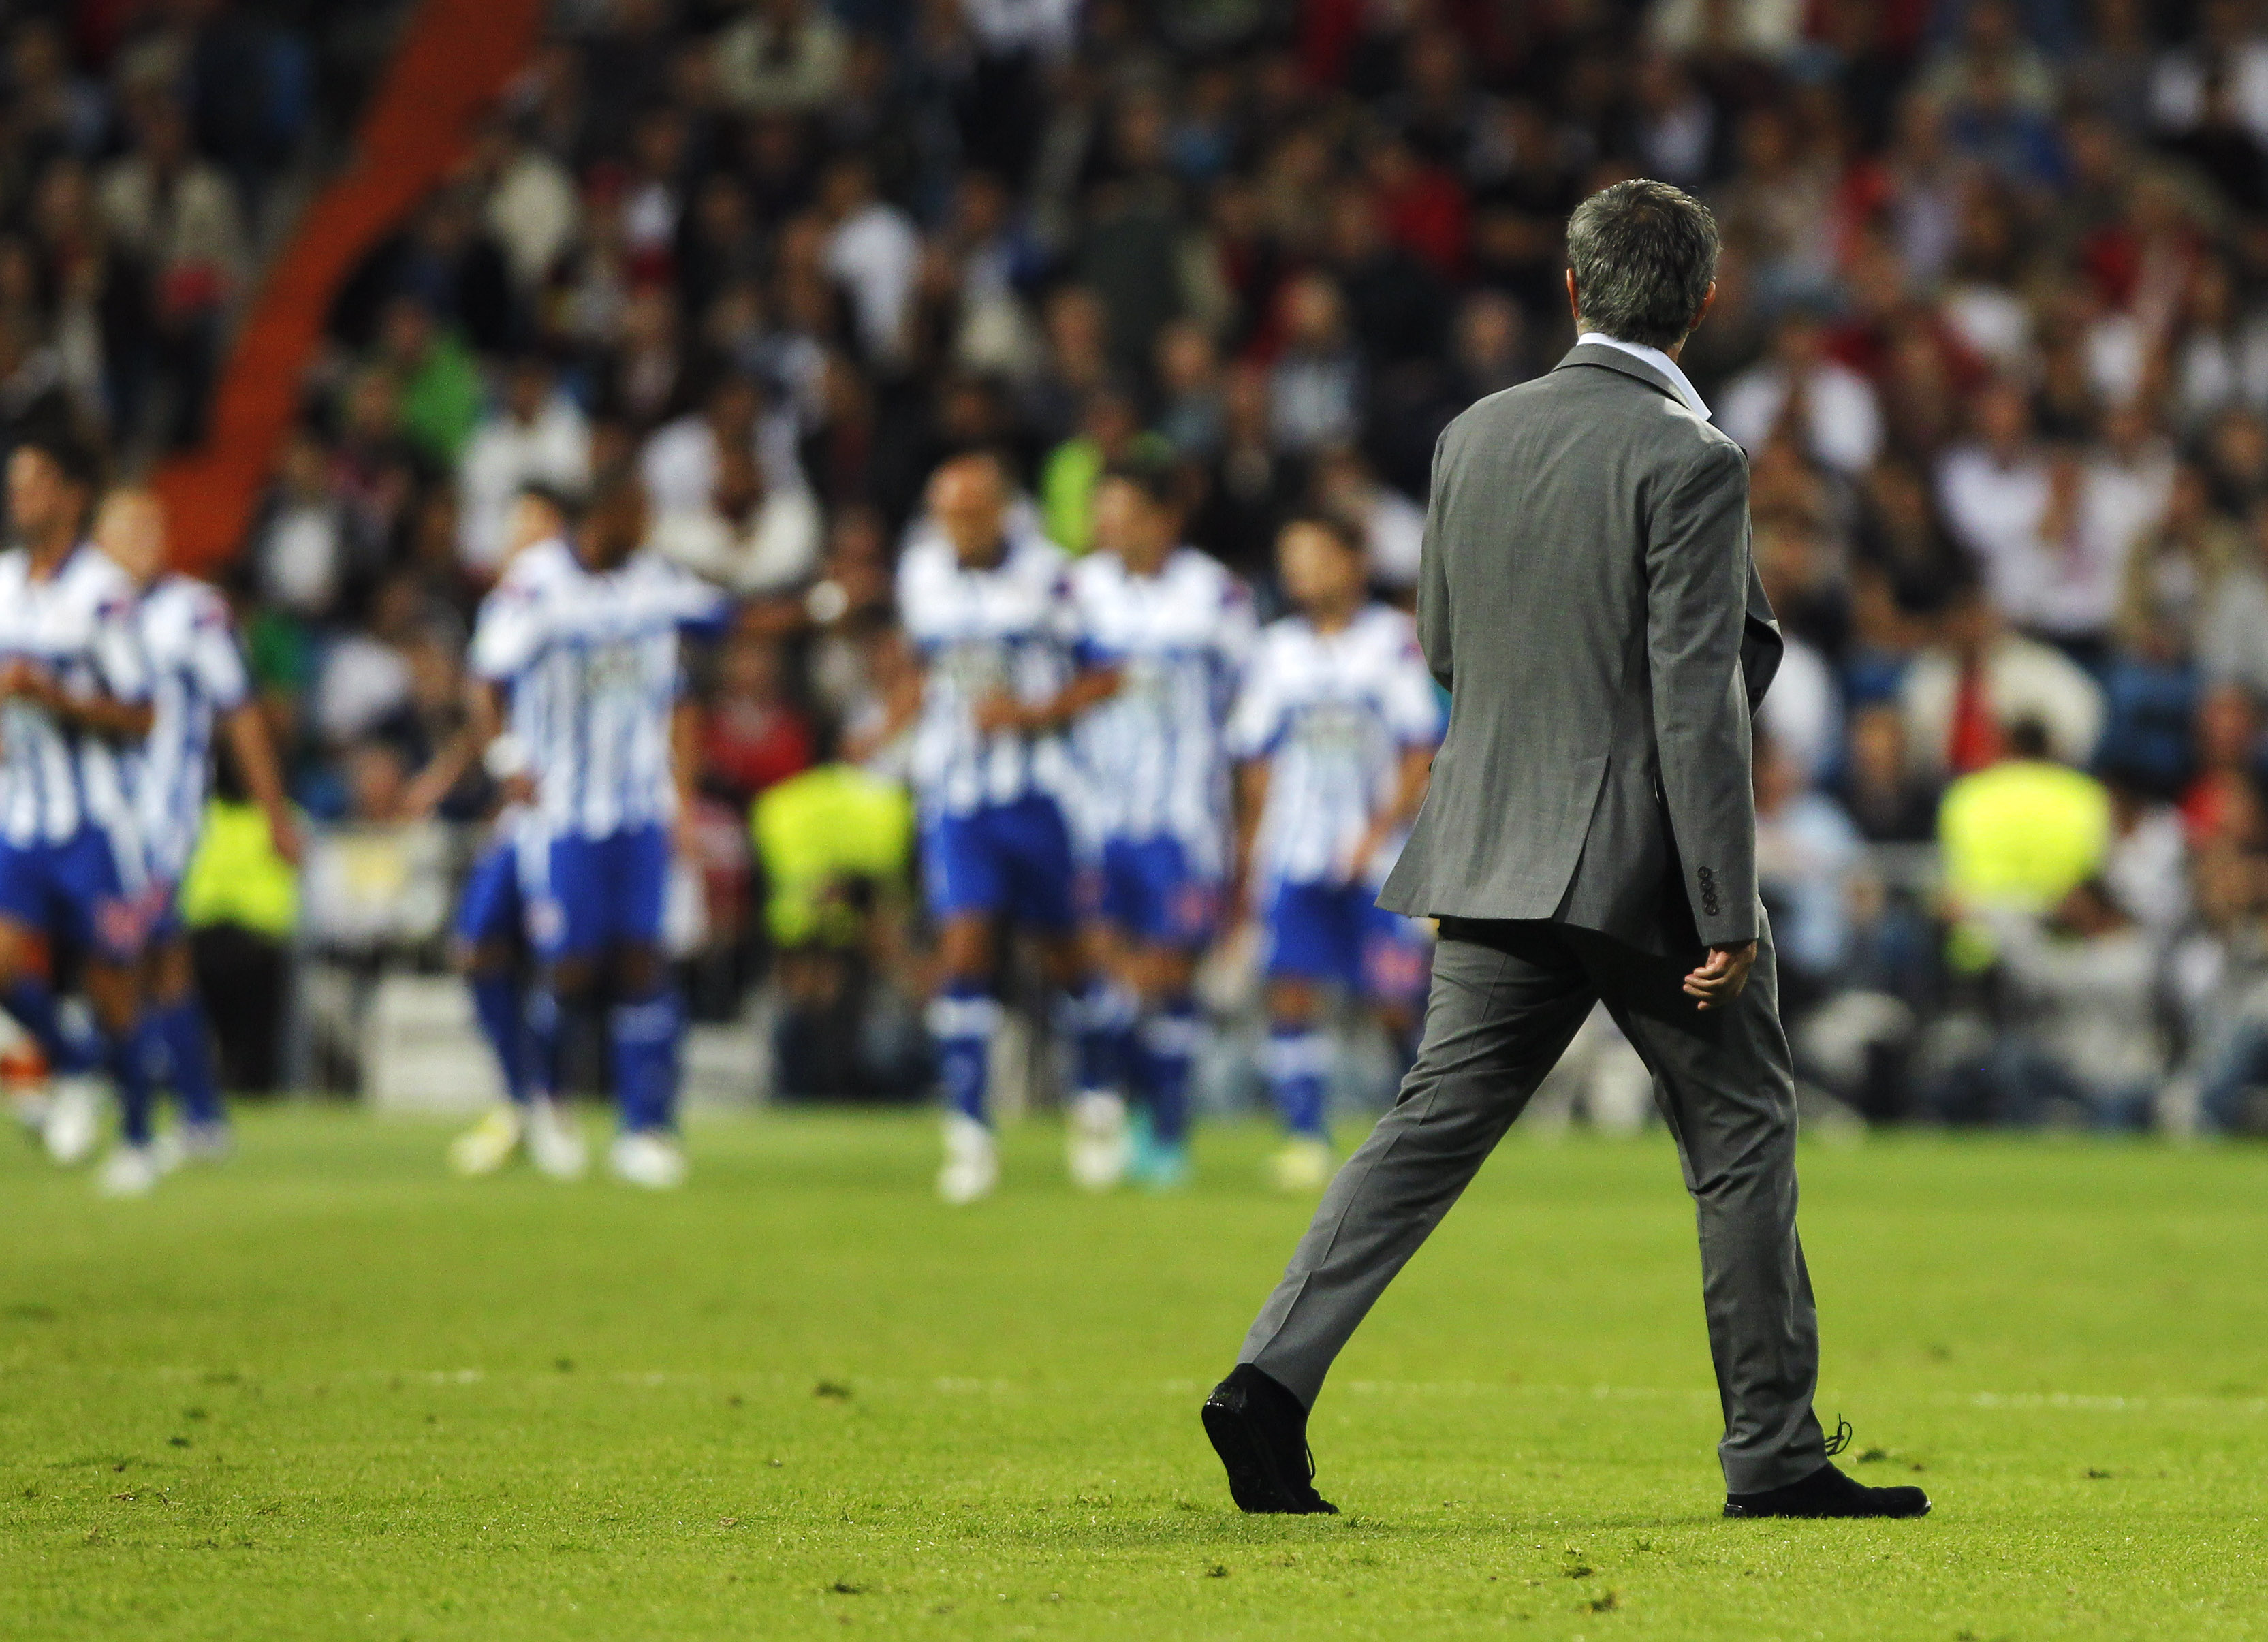 Deportivo la Coruna tog ledningen i början av matchen, sedan lade Madrid in sin sistaväxel.